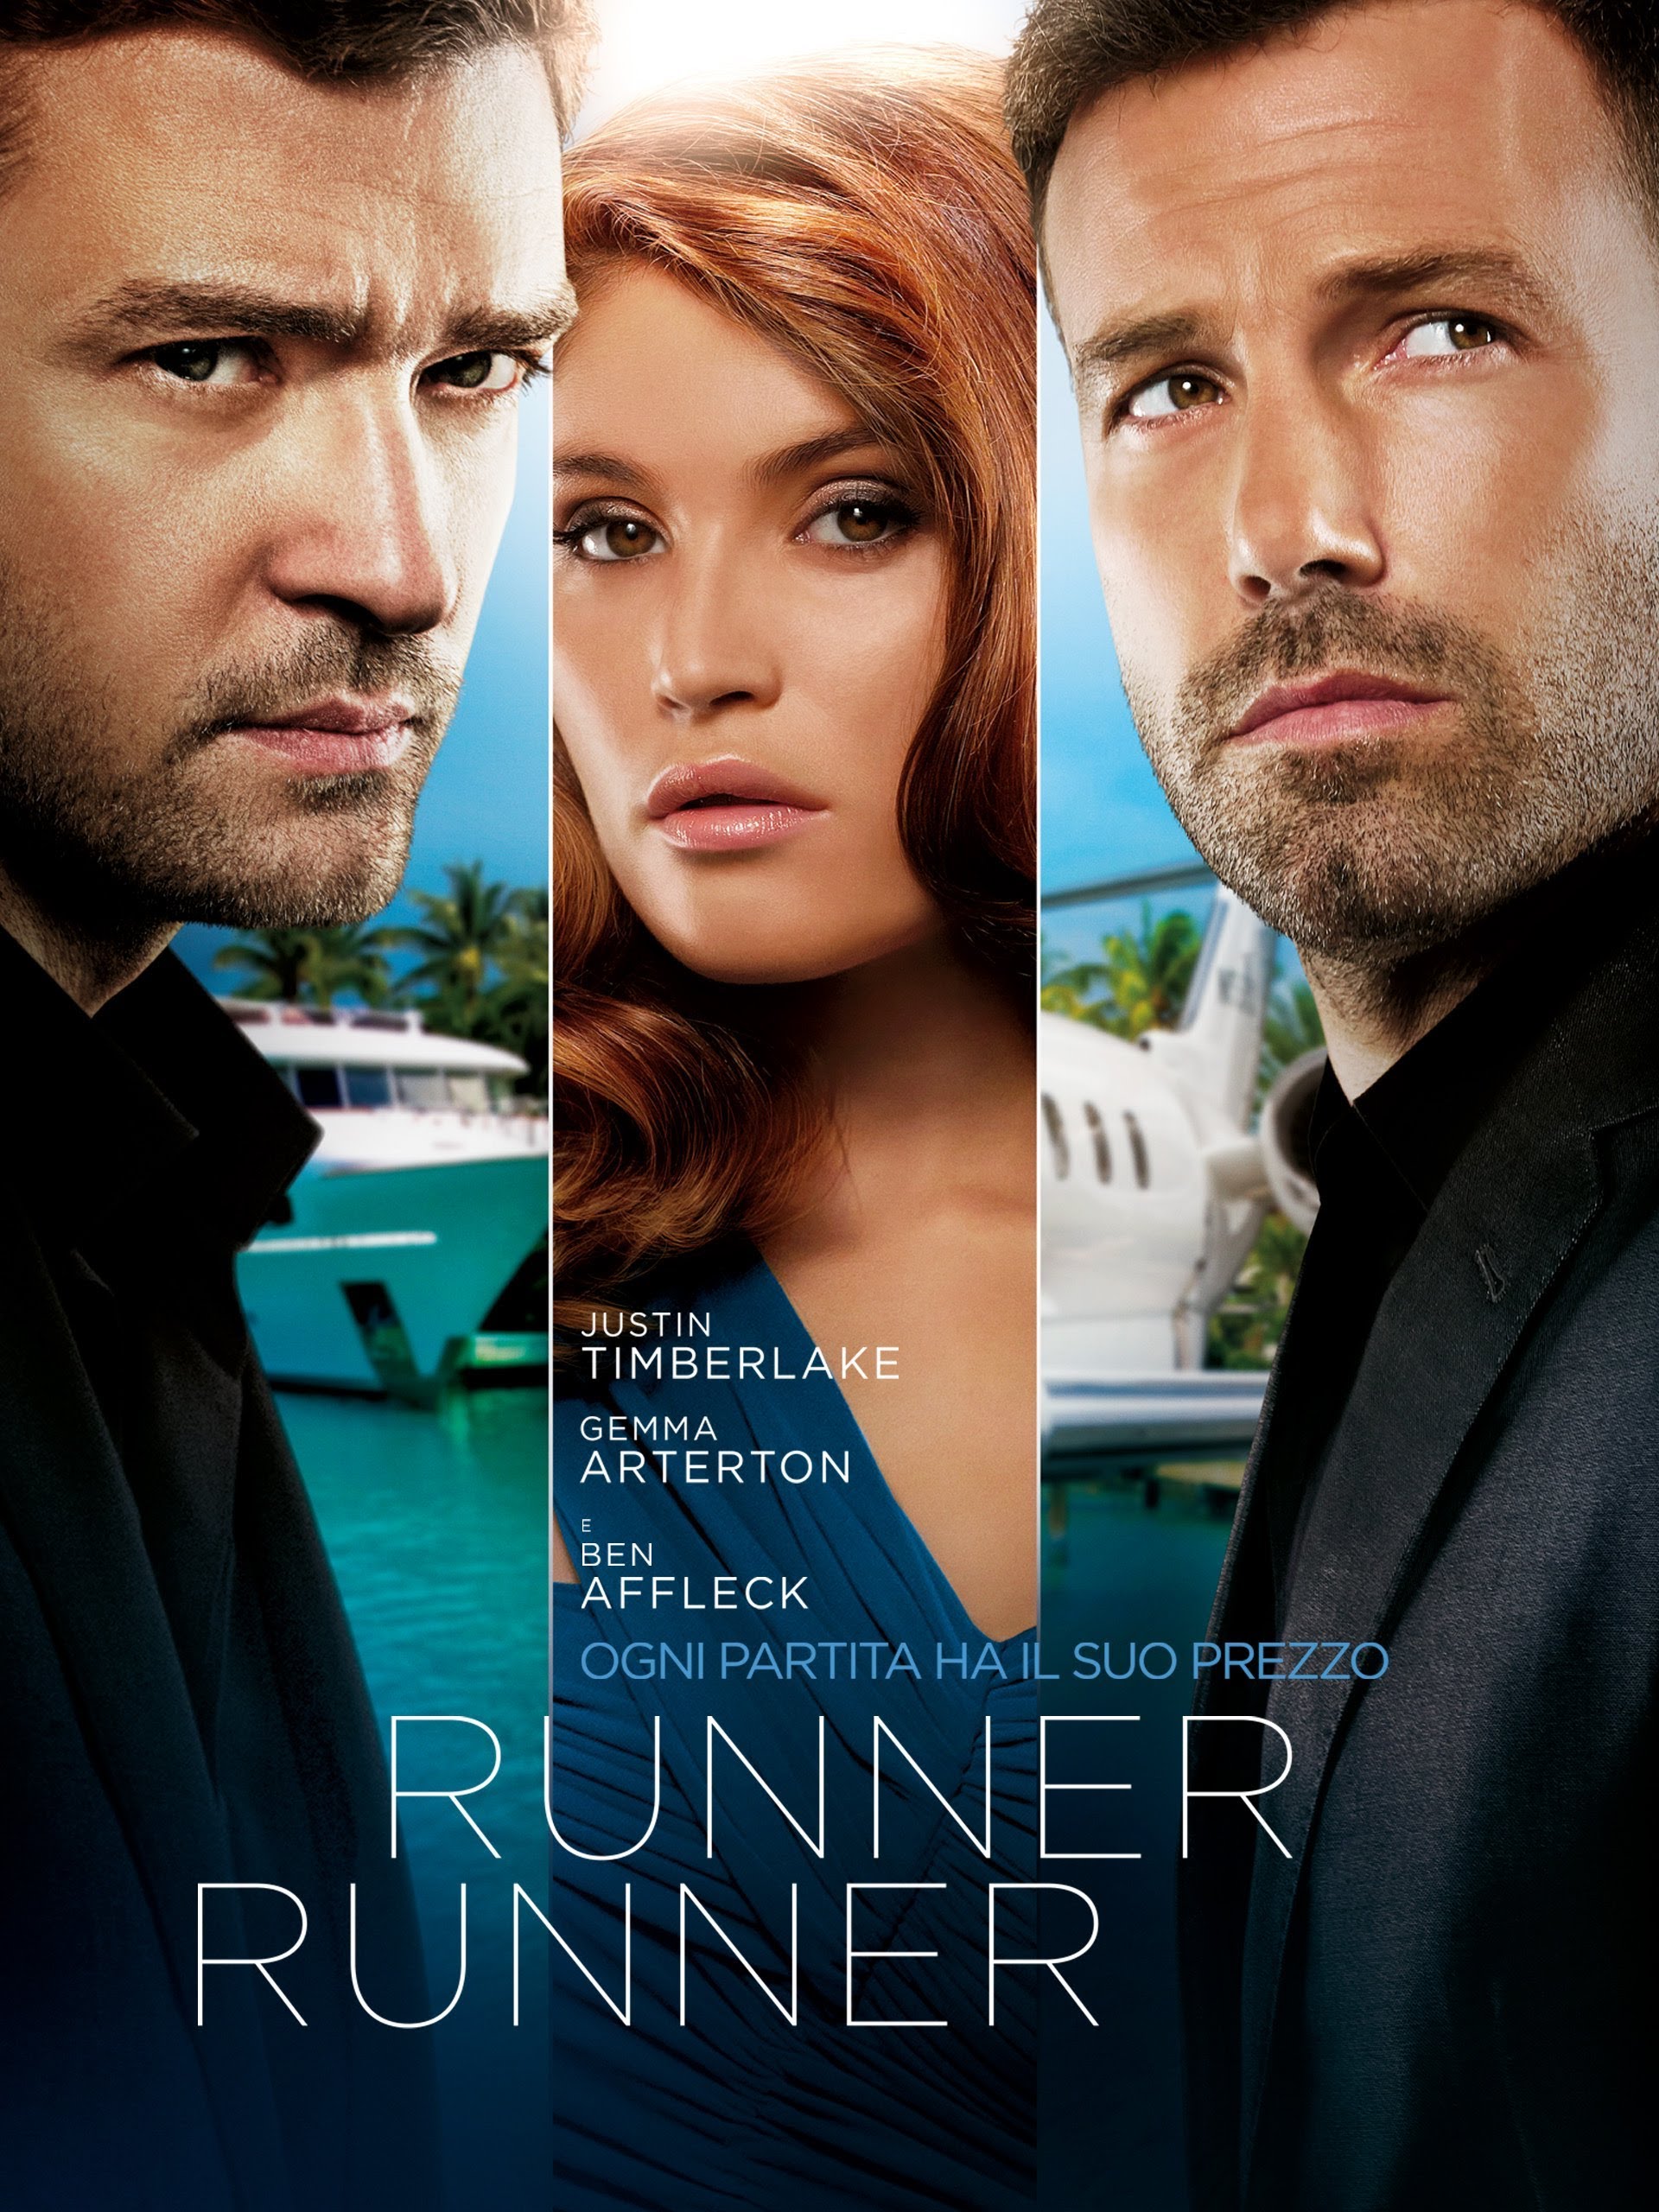 Runner Runner [HD] (2013)